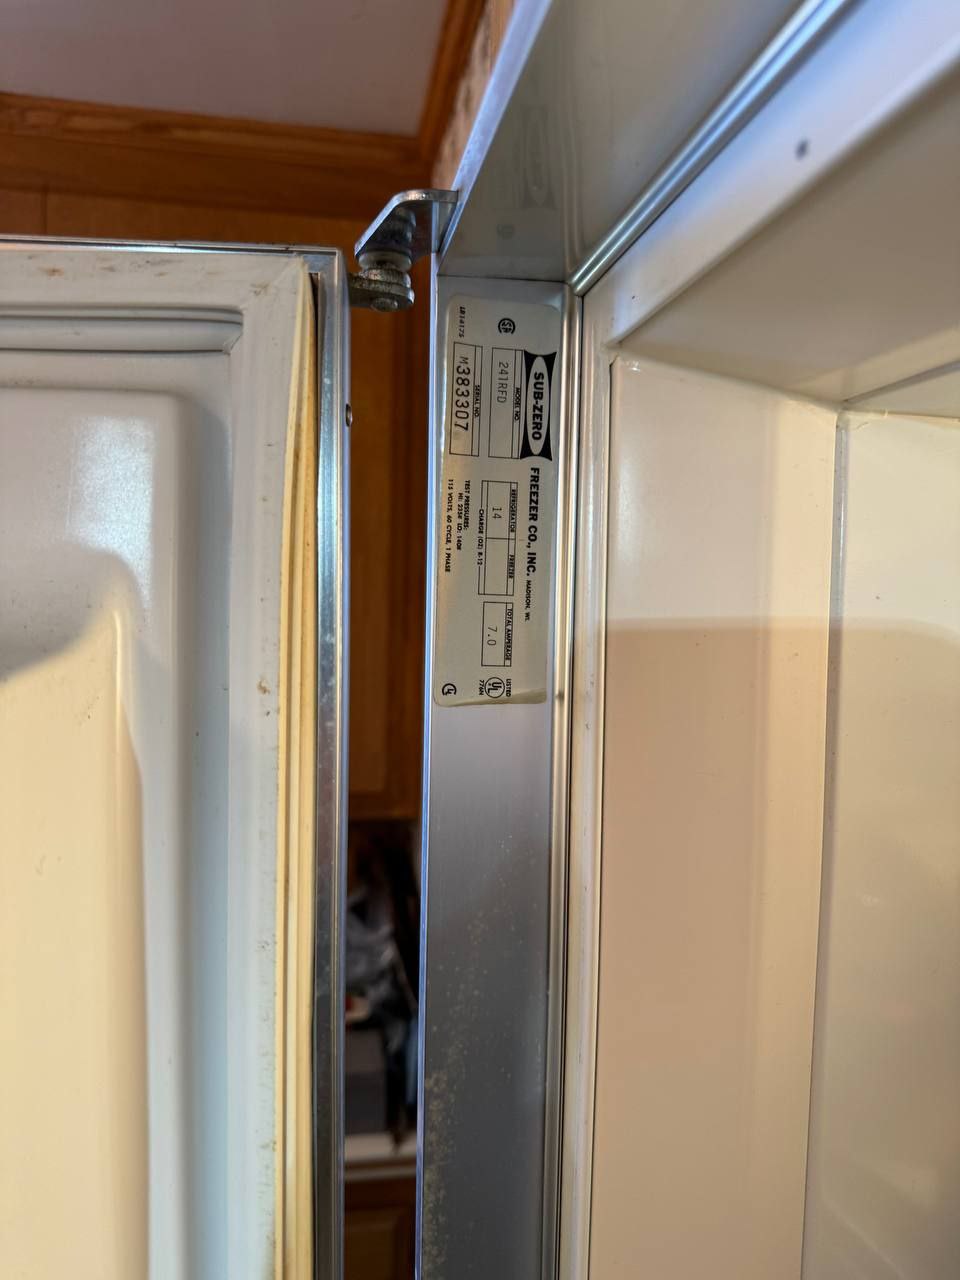 Sub-Zero Fridge Repair in San Diego Refrigerator Repair